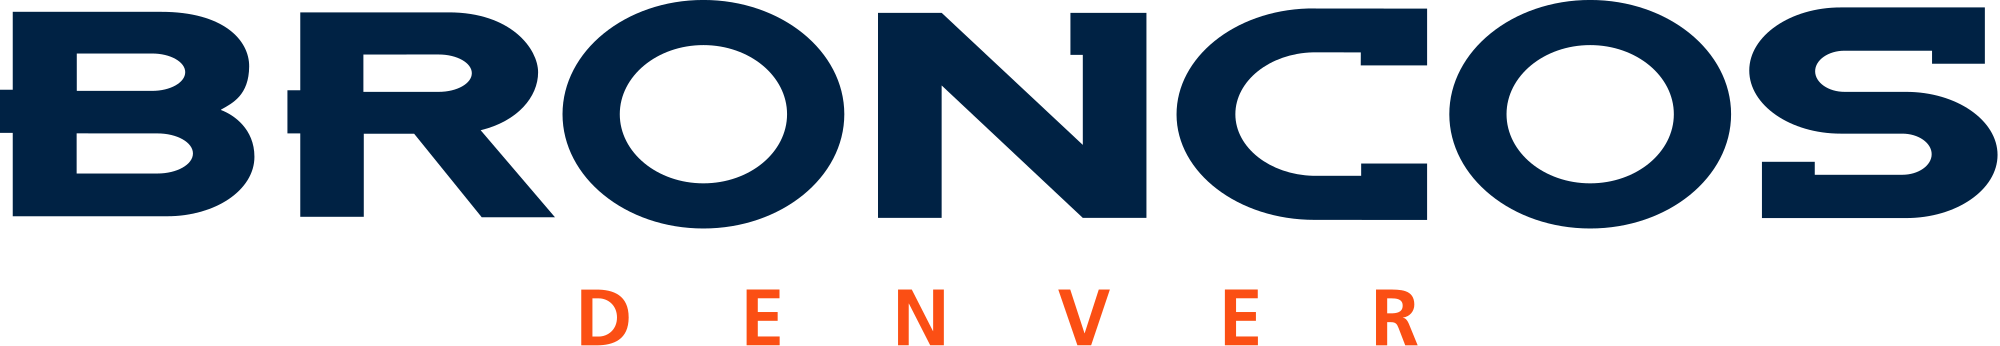 NFL Broncos Logo - Denver Broncos wordmark.svg